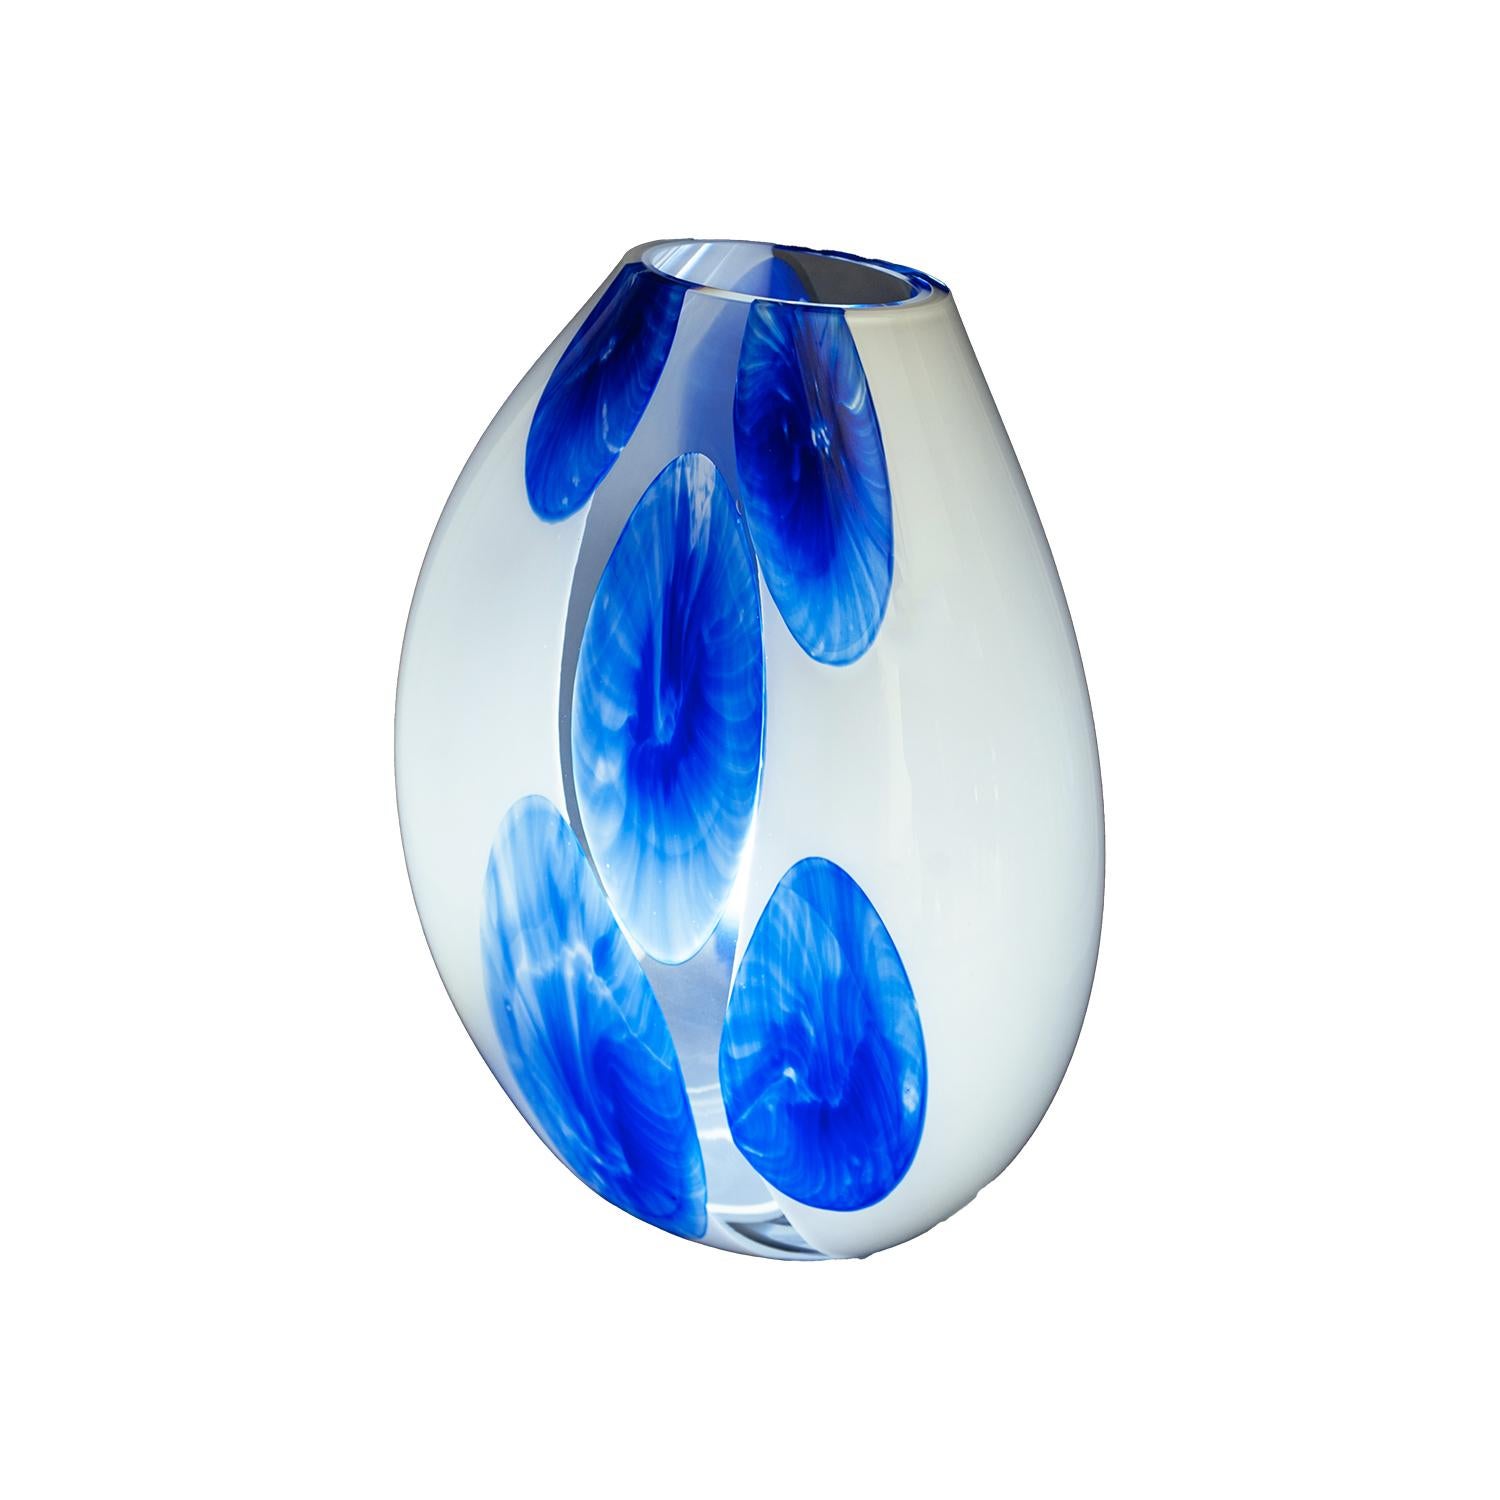 Illuminez votre espace avec l'élégance et l'art du verre soufflé de Murano. Nous vous présentons une lampe de table unique, habilement fabriquée par les célèbres maîtres verriers de Murano. Cette lampe de table, avec sa belle couleur blanc laiteux